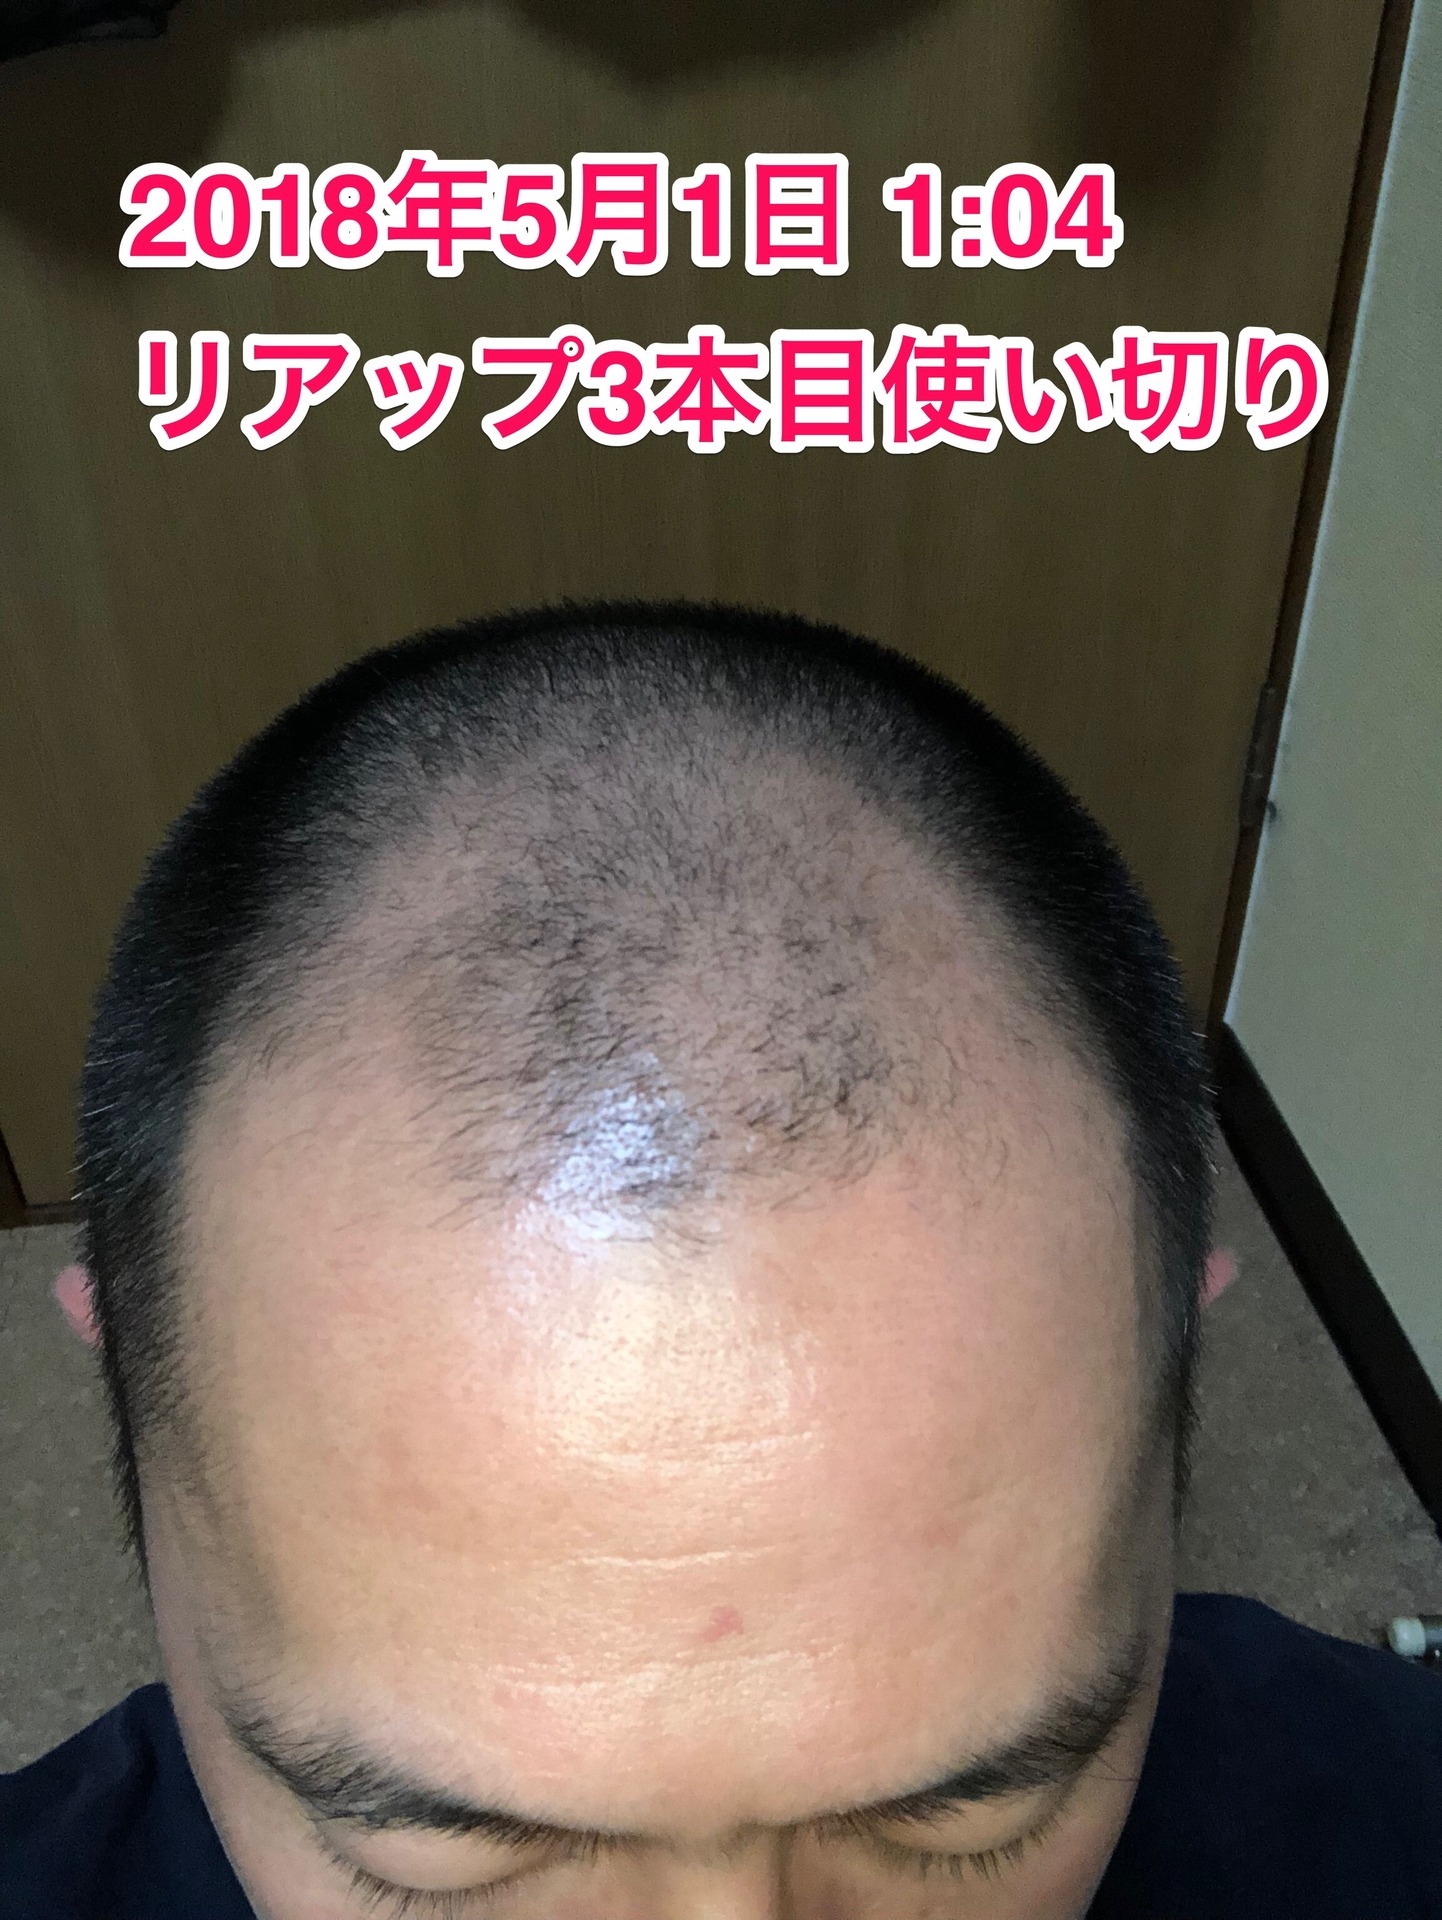 40代オヤジの頭髪を経過観察するブログ 18年5月1日 リアップ3本使い切り